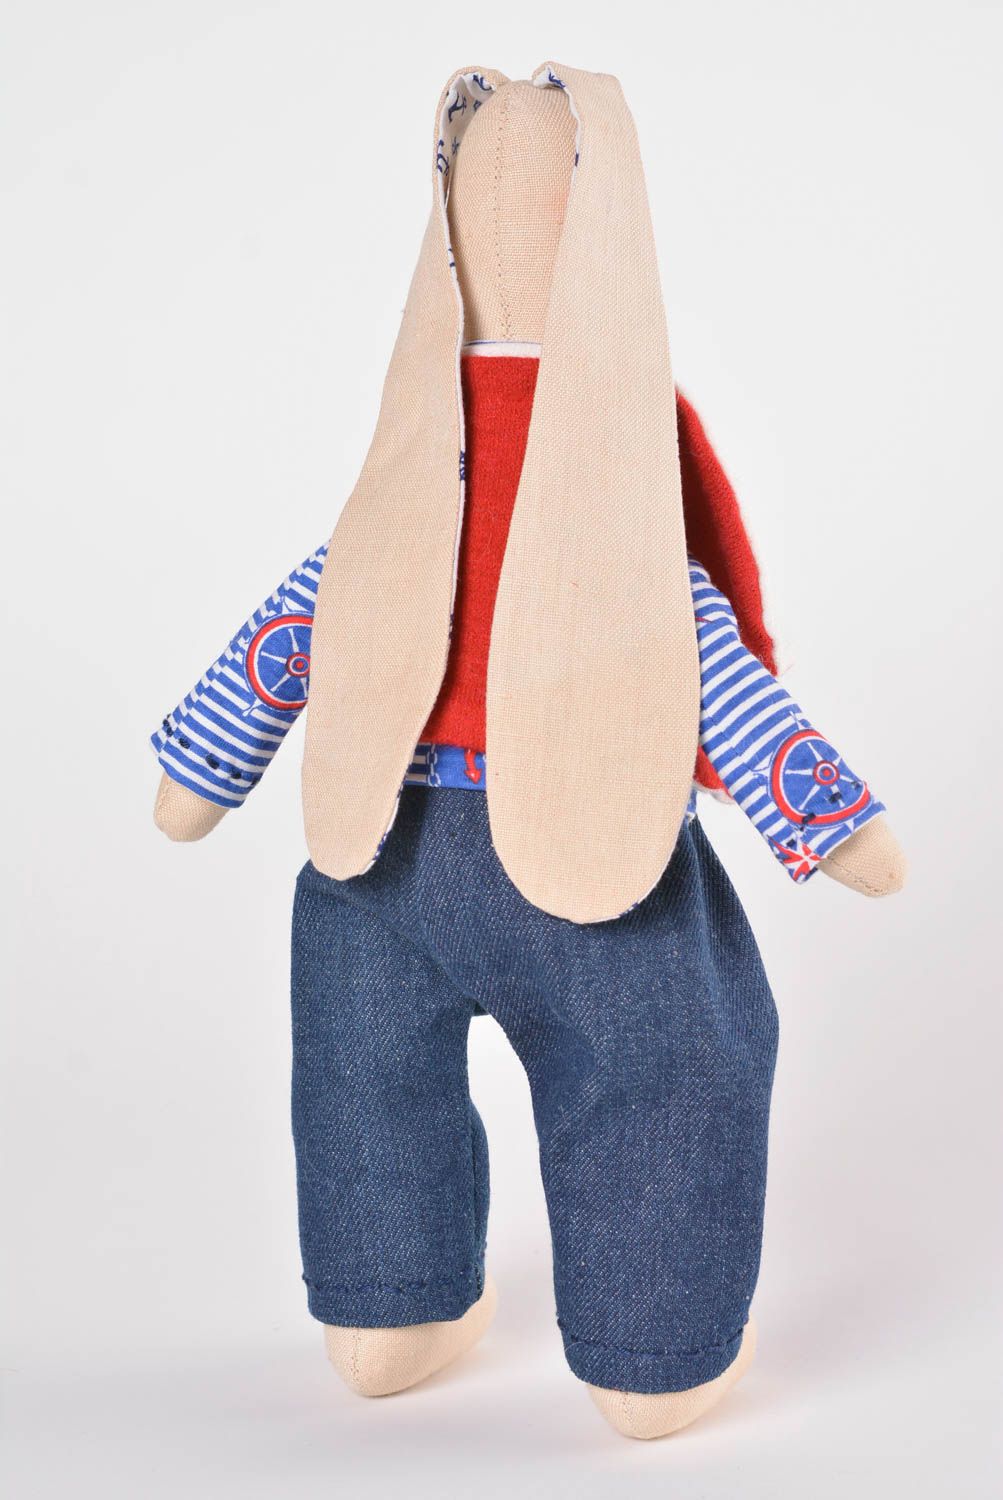 Игрушка заяц ручной работы авторская игрушка из ткани стильный подарок фото 3